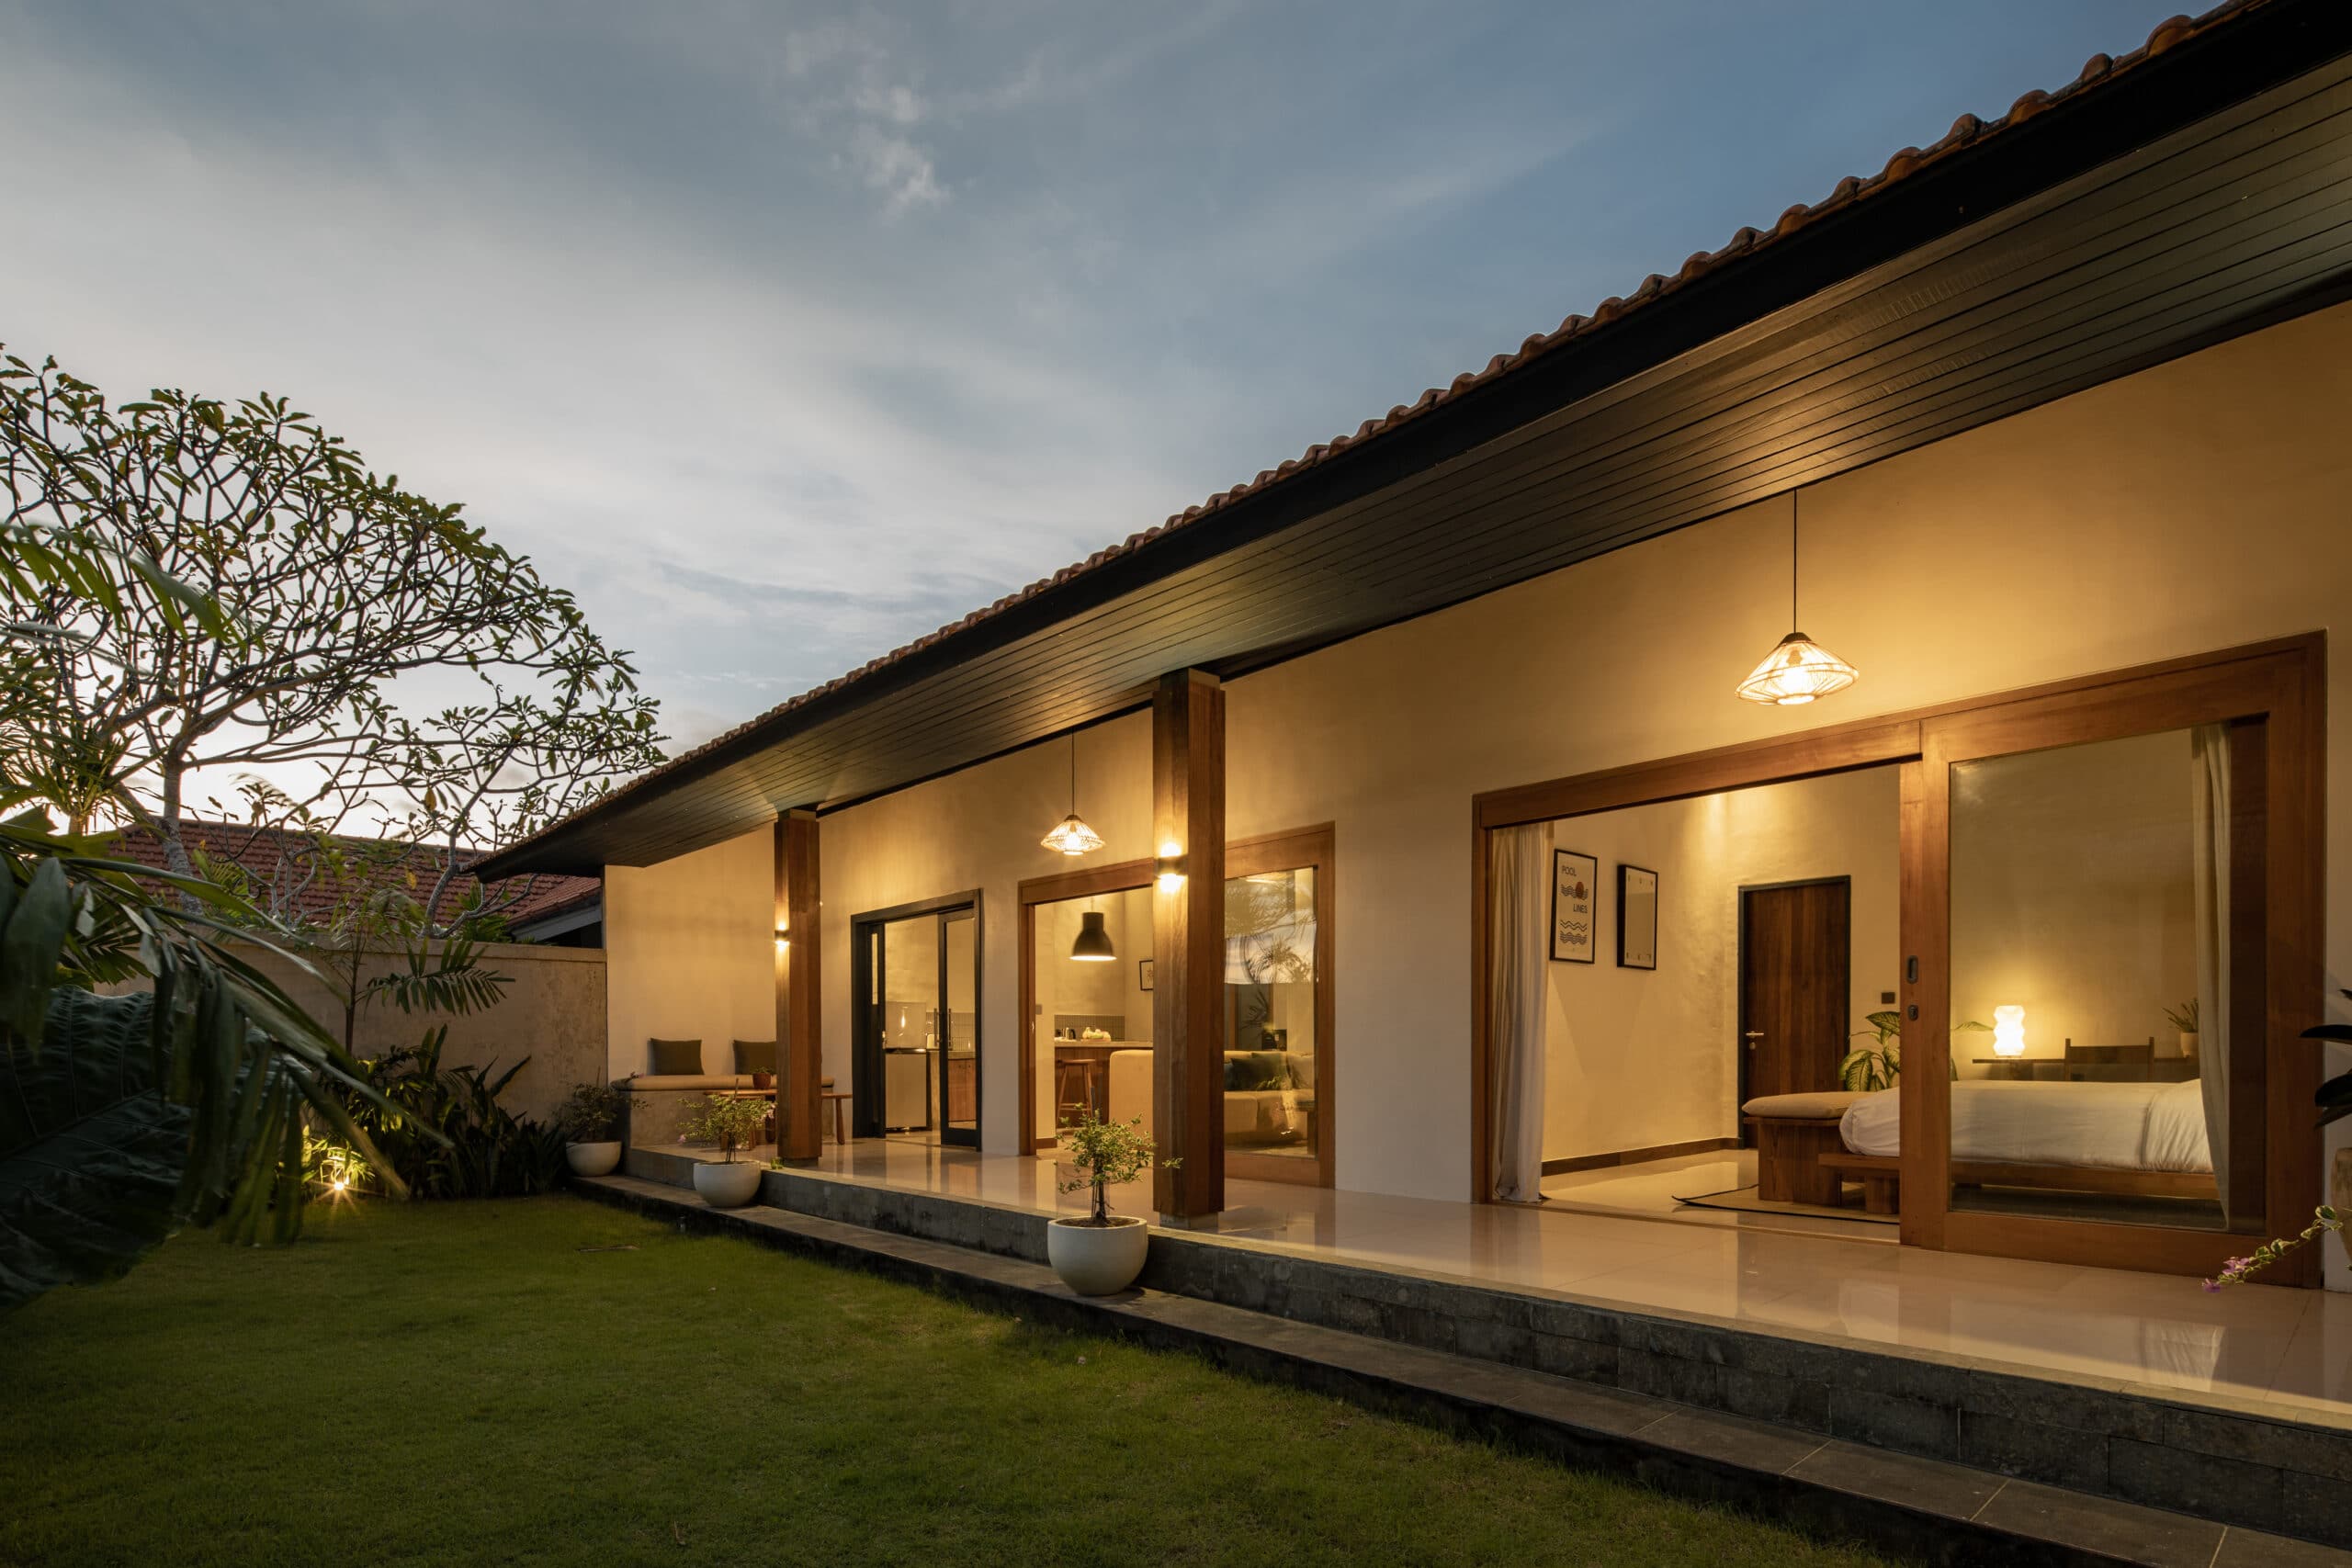 Design Assembly - Palm Studio - Bali Architect - Interior Design - Bali Villa - Garden - Wooden Facade - Building Facade